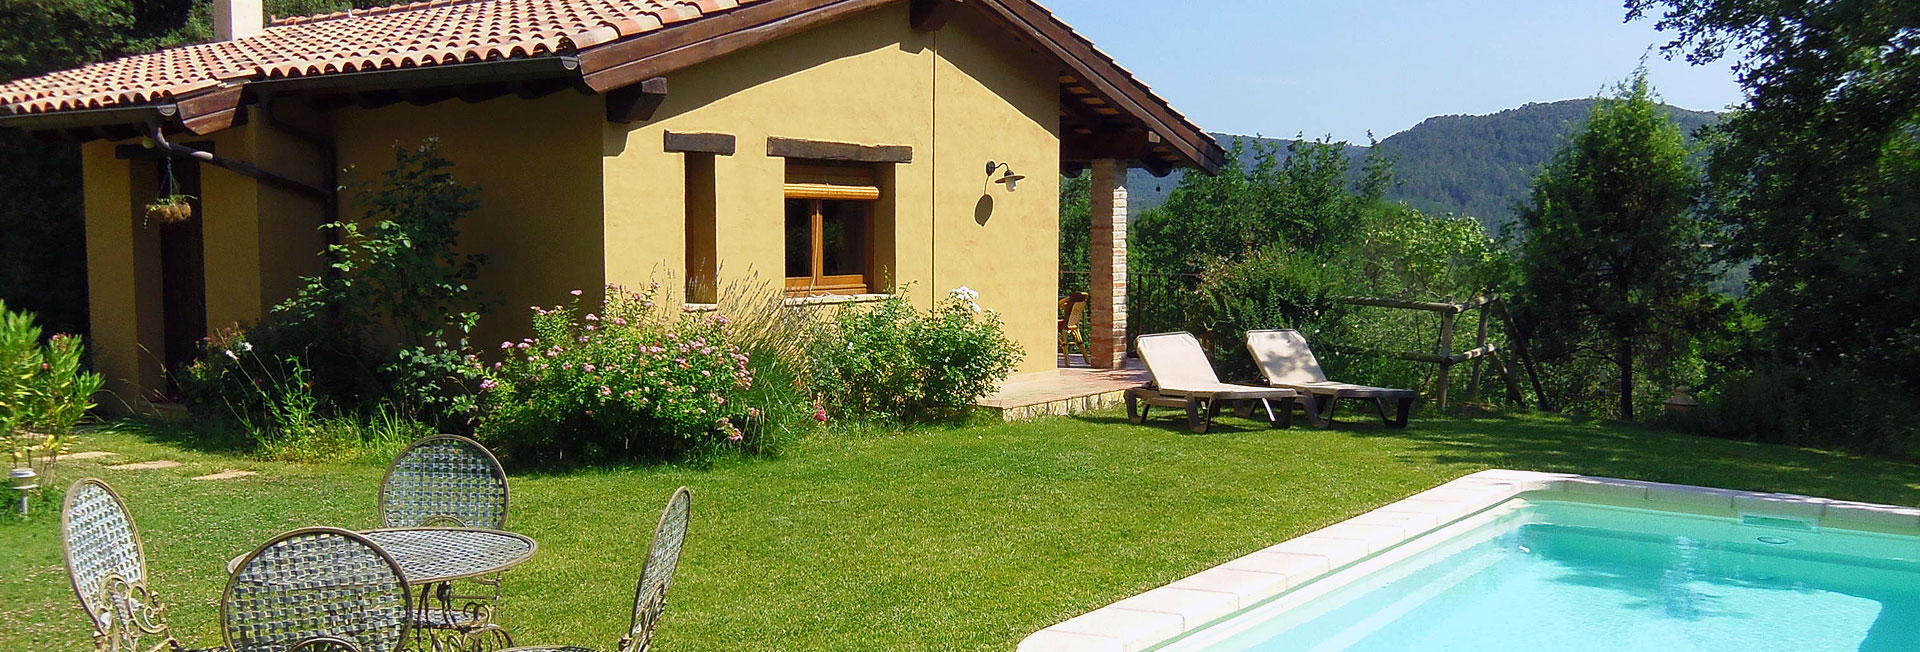 Casa de lloguer amb jardi i piscina a Girona